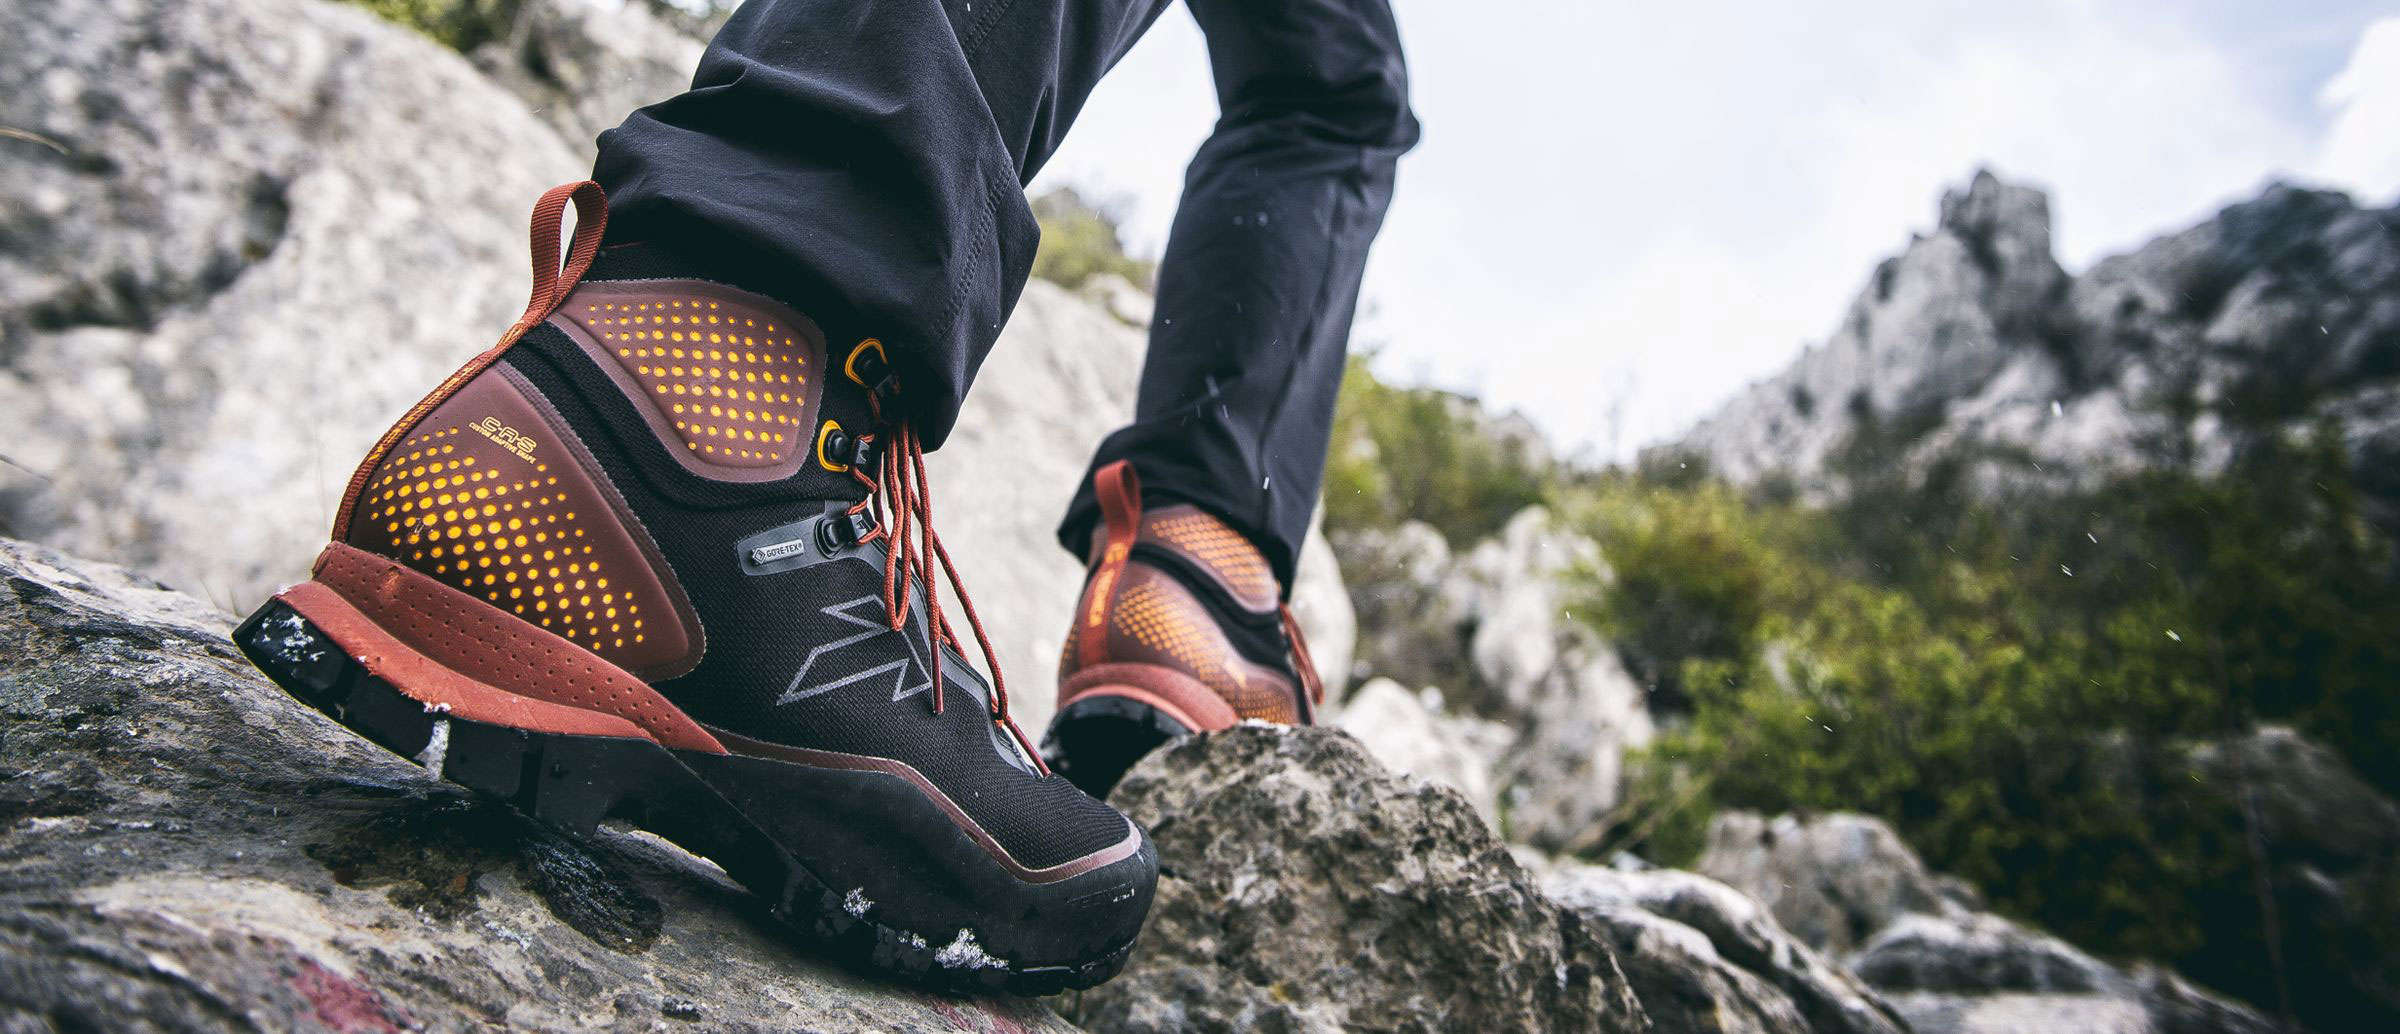 Giày Trekking được dùng nhiều khi leo núi